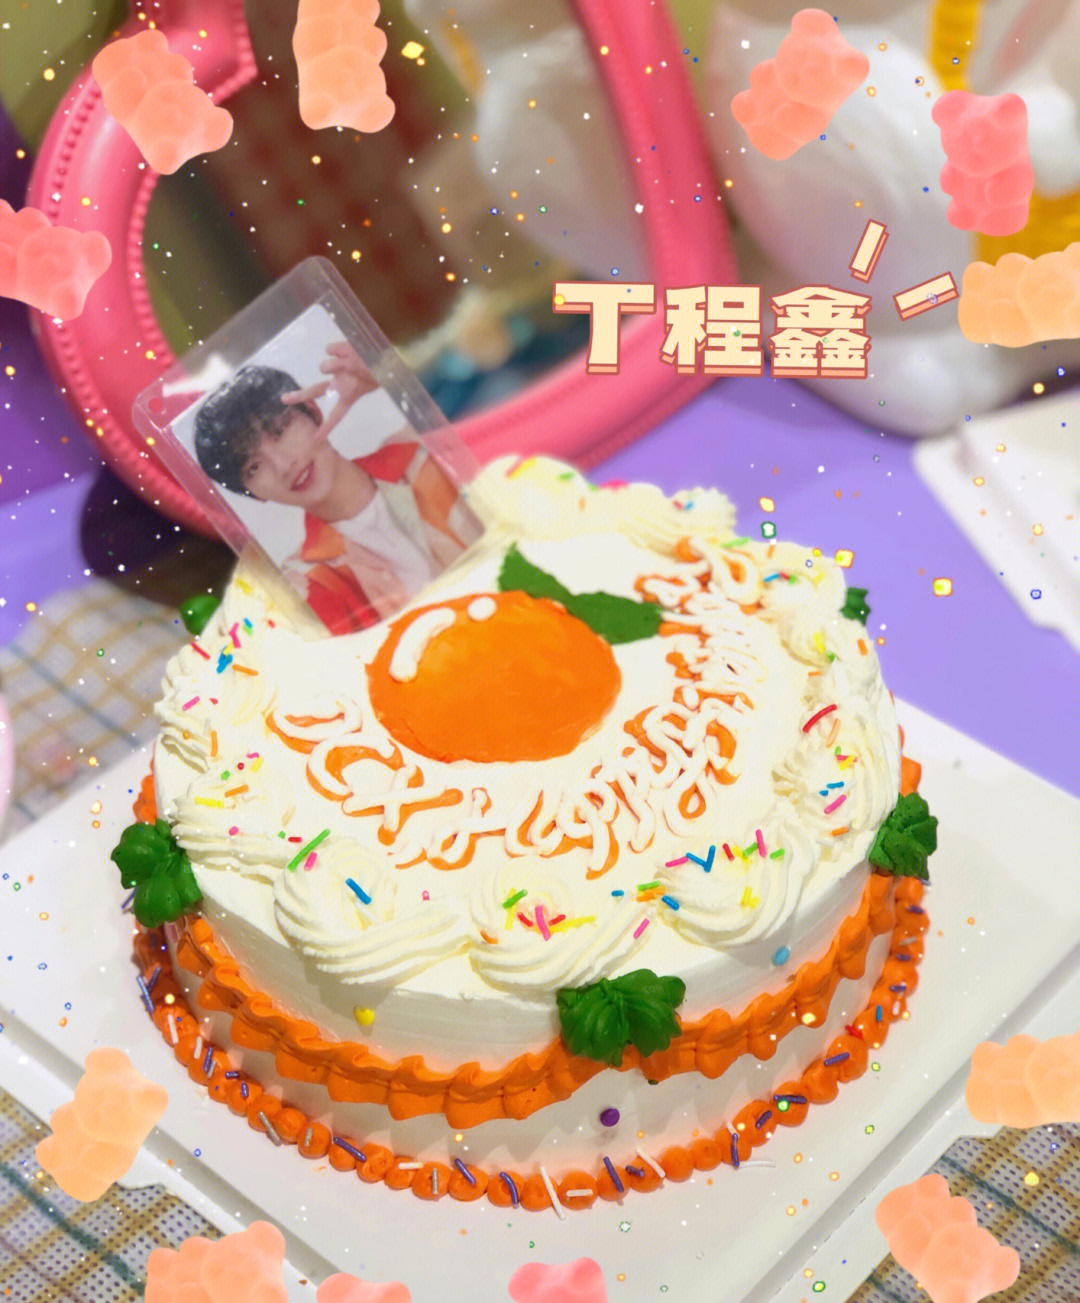 丁程鑫17岁生日蛋糕图片